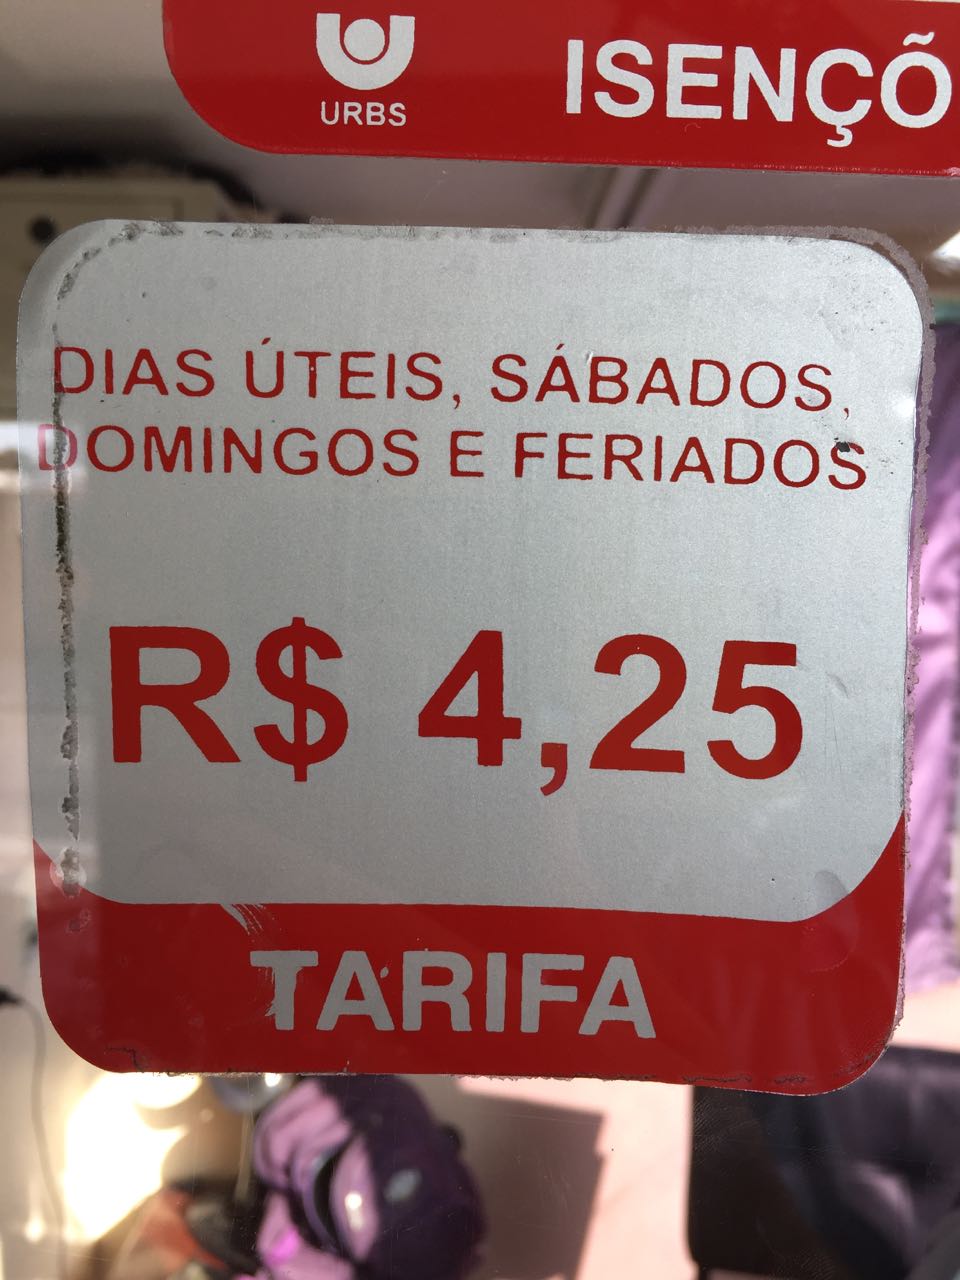  Passagem de ônibus em Curitiba poderia ser R$1,94 mais barata